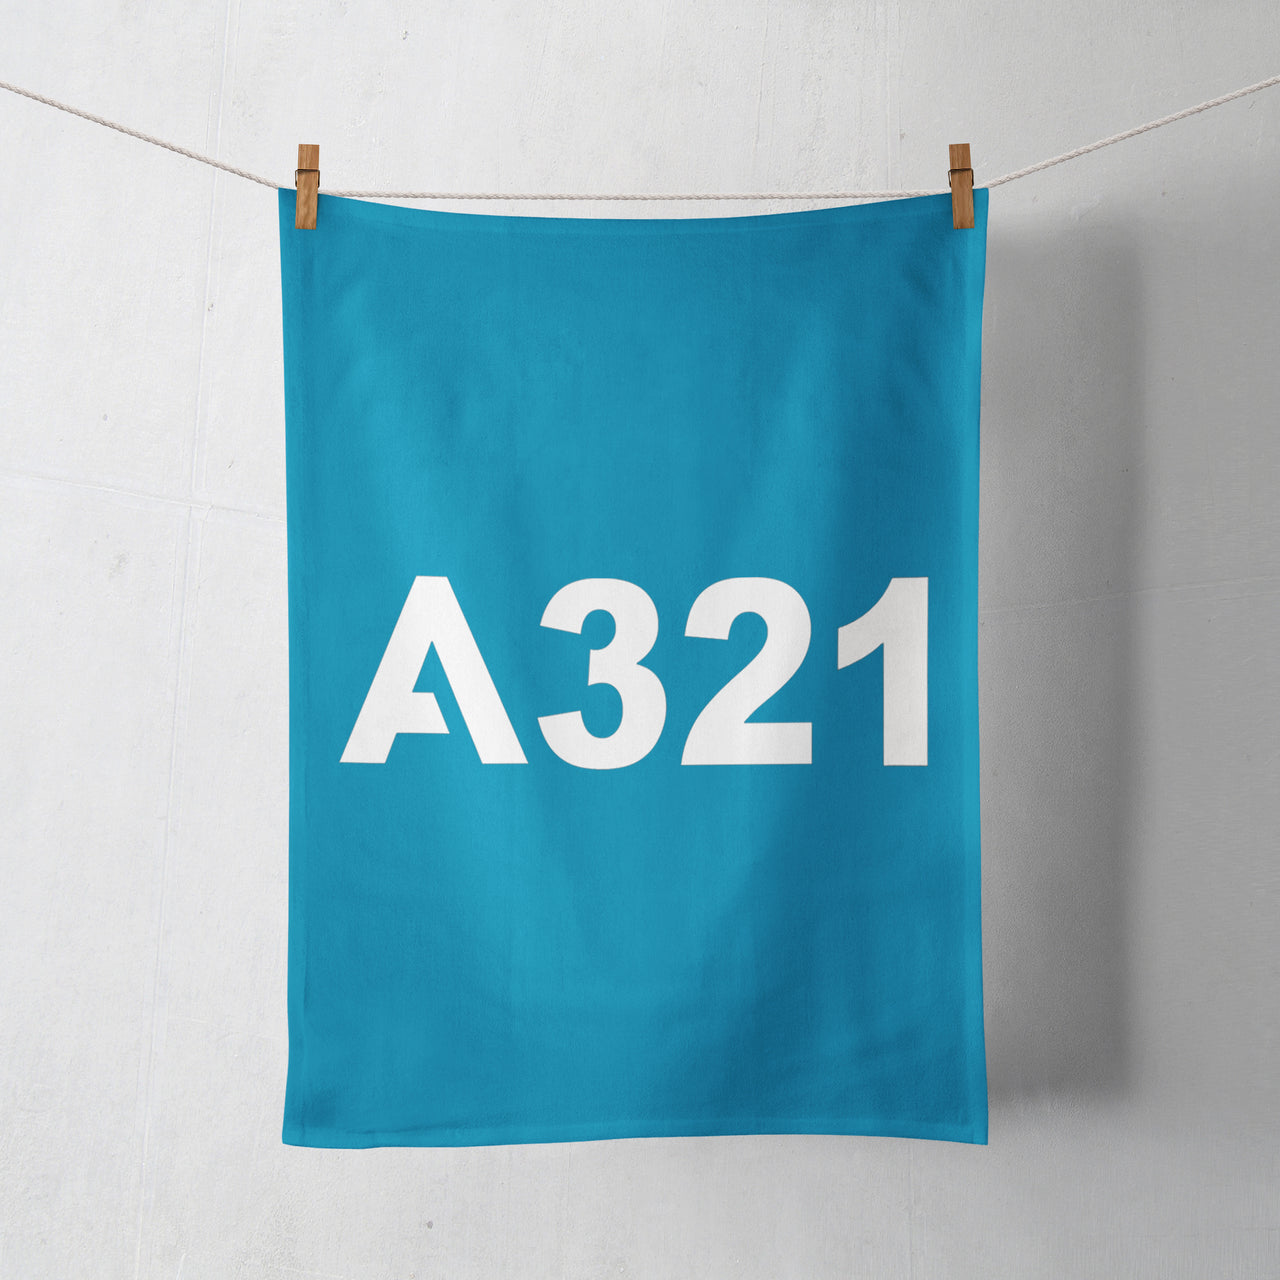 A321 Flat Text Designed Towels